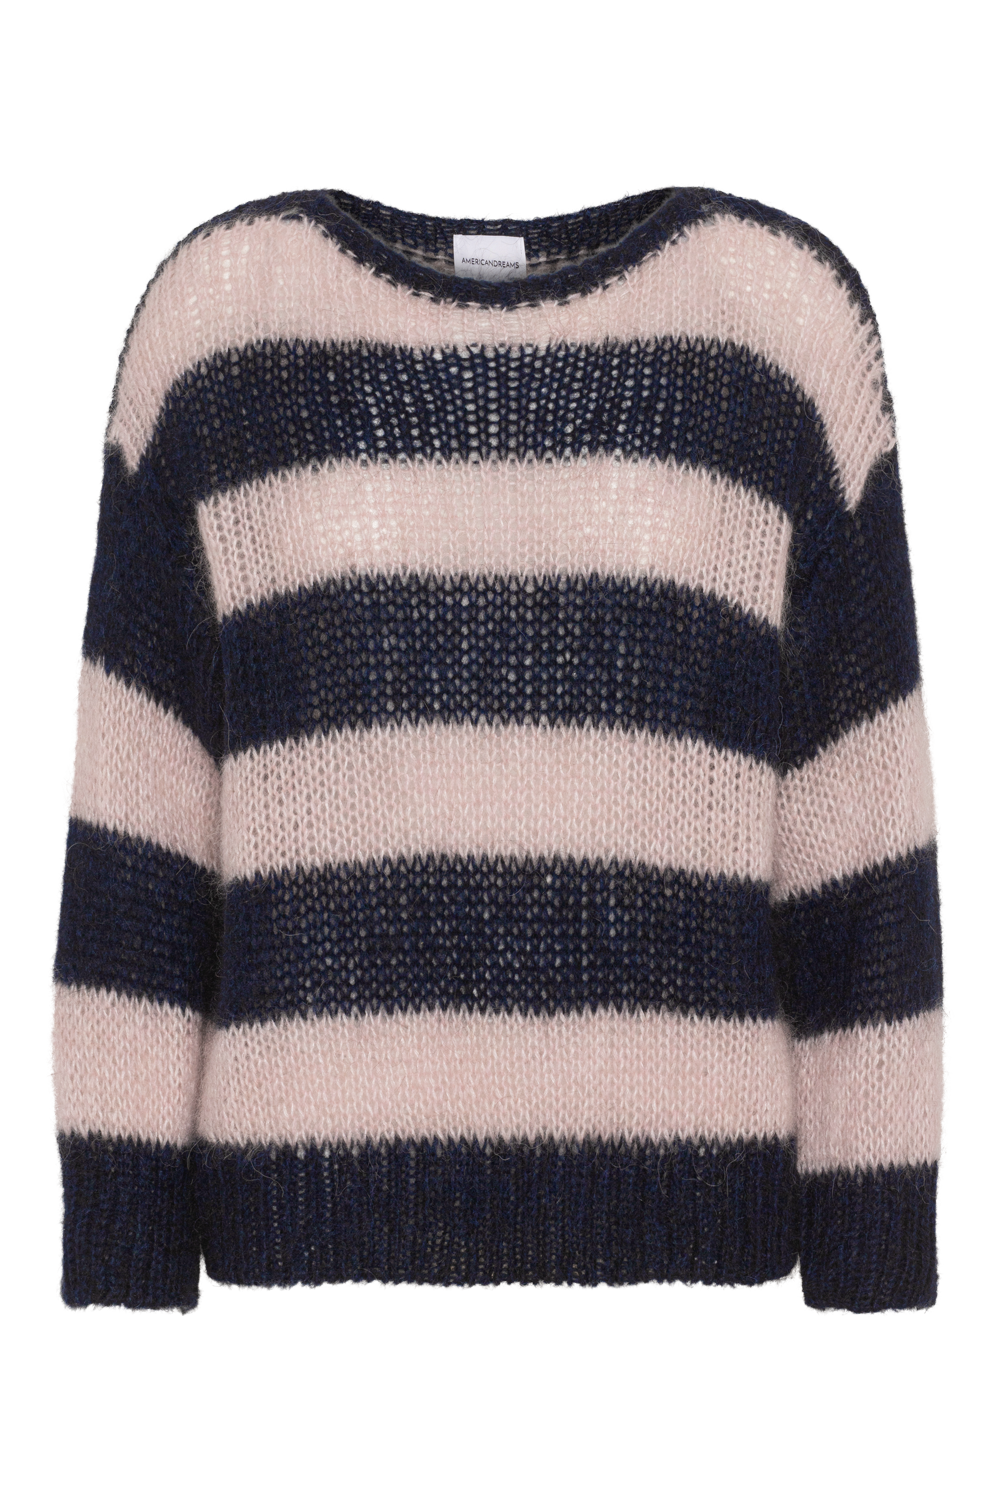 Amira Knit Pullover Navy / Light Pink Striped